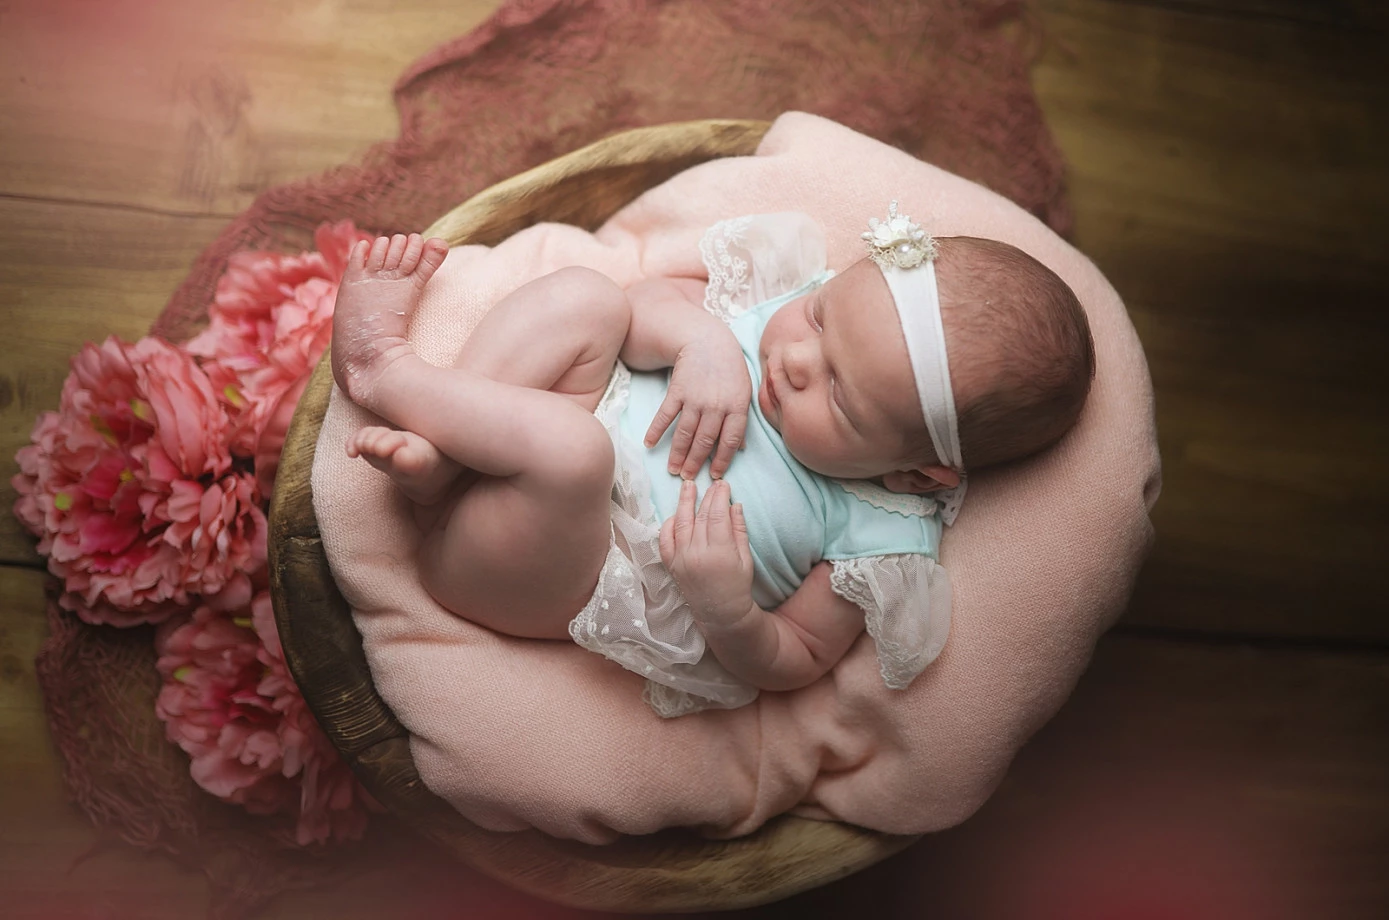 fotograf krakow paheli-fotografia portfolio zdjecia noworodkow sesje noworodkowe niemowlę